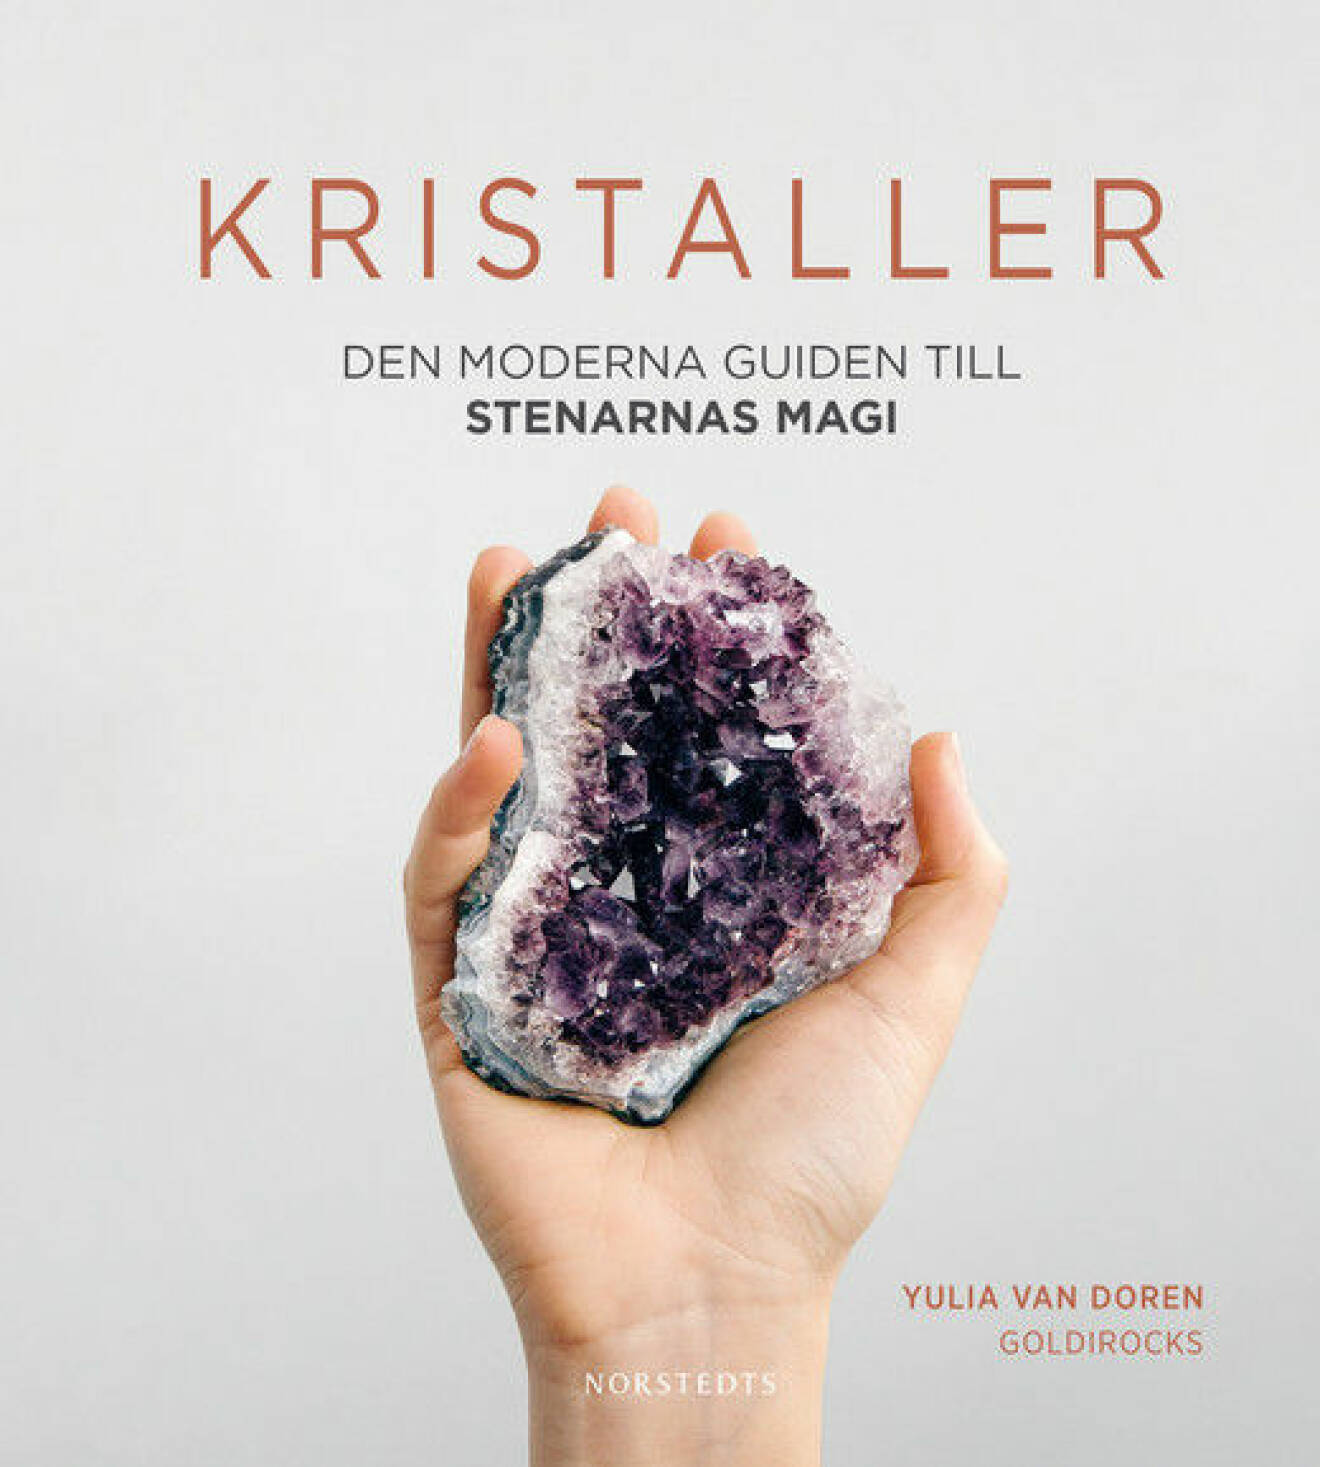 Lär dig allt och lite till om kristaller och stenar genom att läsa boken Kristaller: den moderna guiden till stenarnas magi skriven av Yulia Van Doren. 